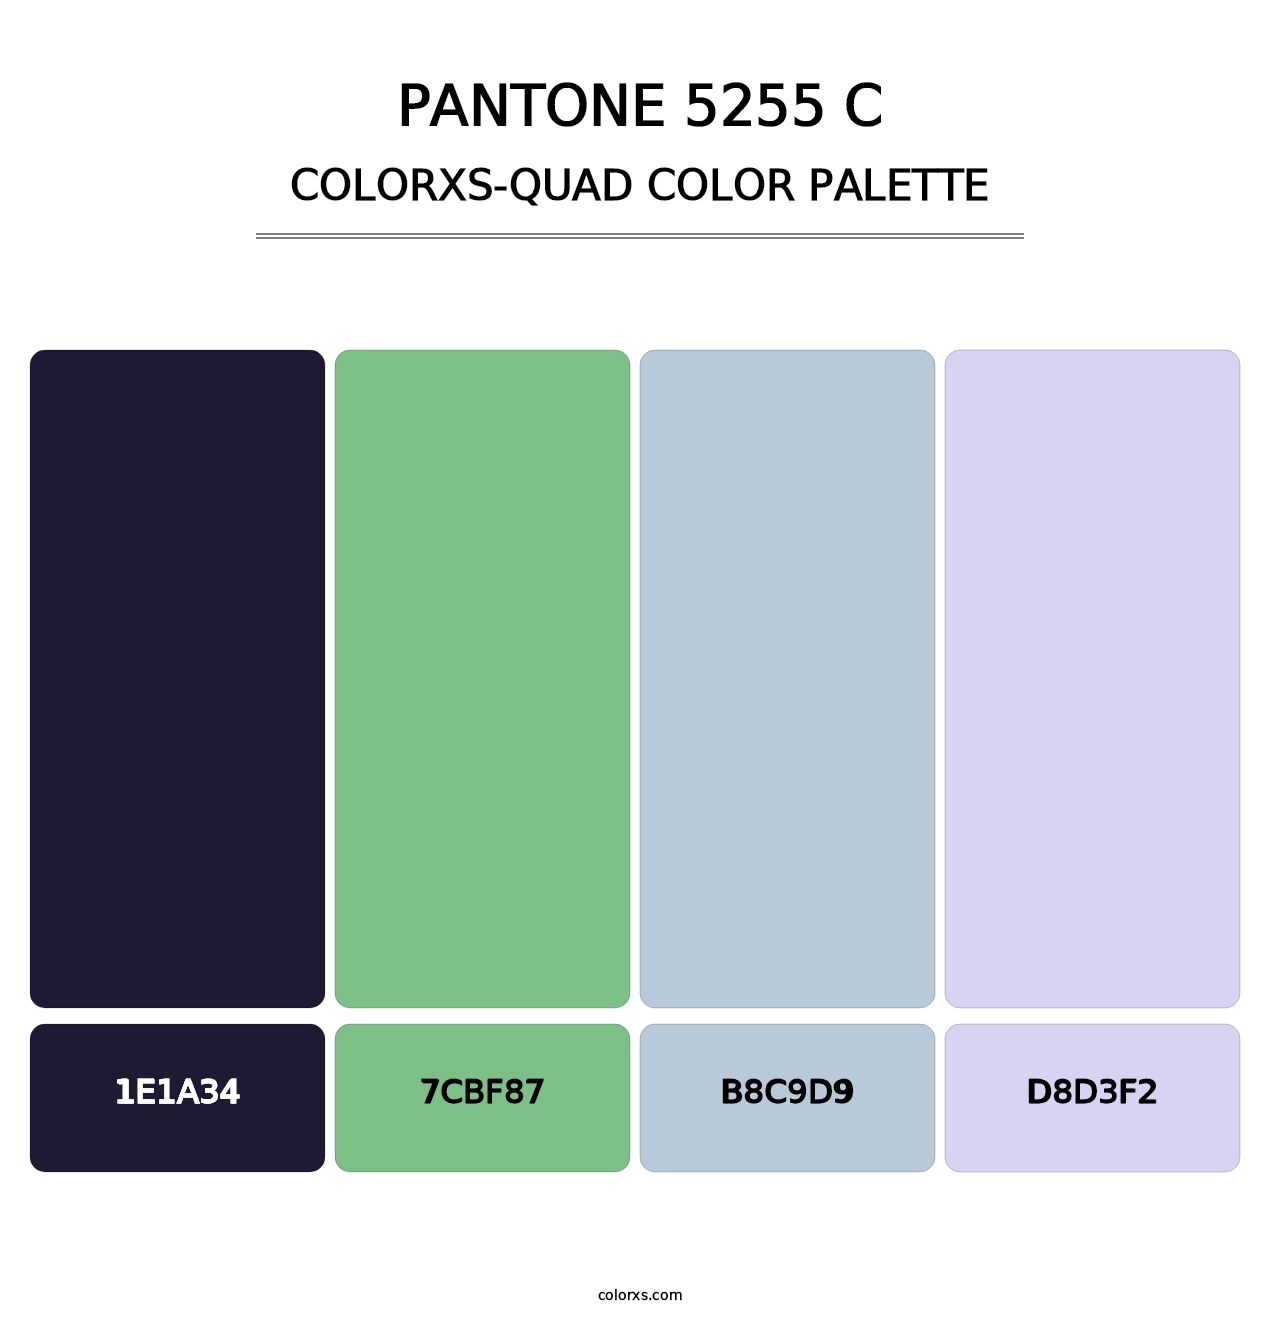 PANTONE 5255 C - Colorxs Quad Palette